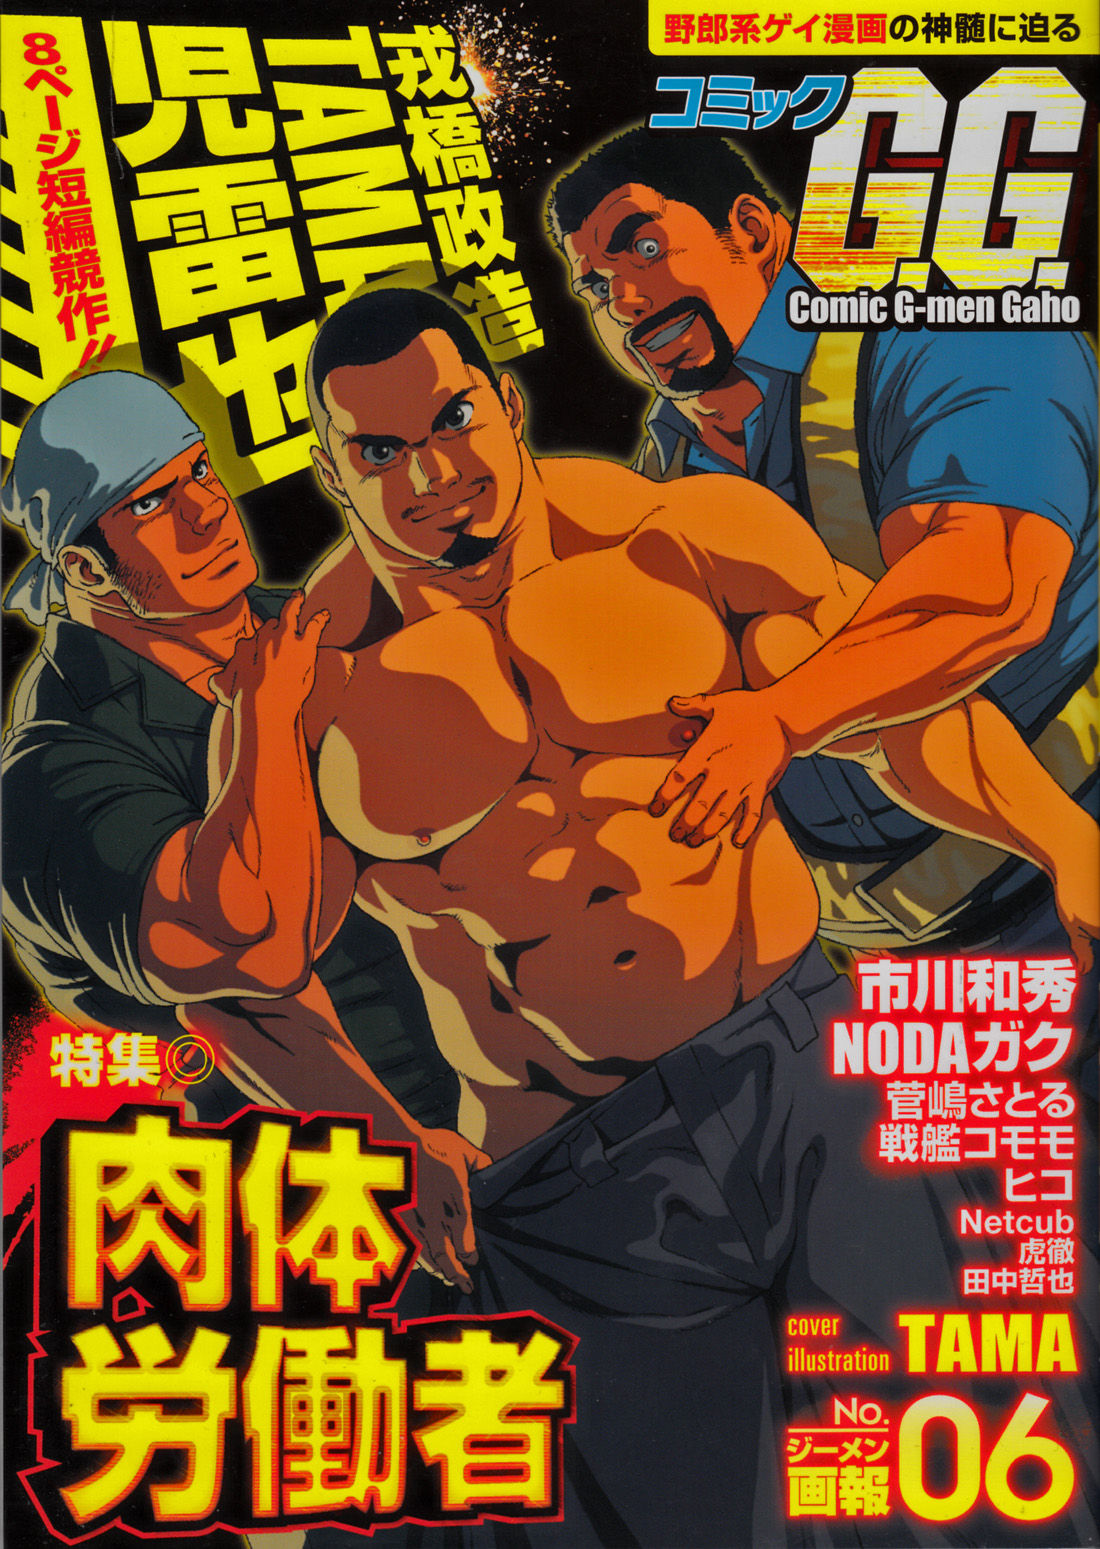 Comic G-men Gaho No. 06 Nikutai Roudousha page 1 full